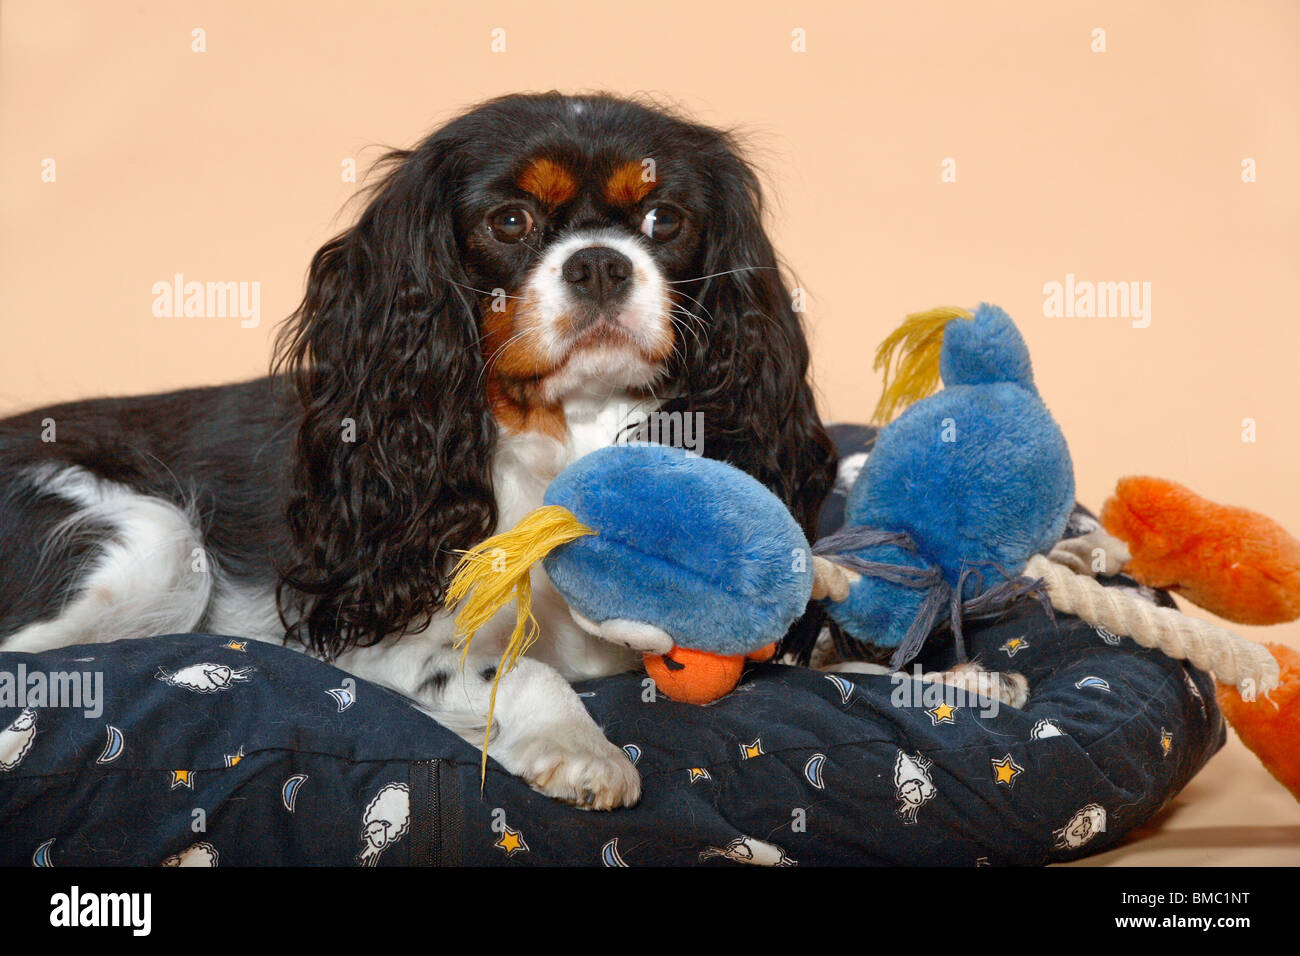 Cavalier auf Kissen / dog on pad Stock Photo